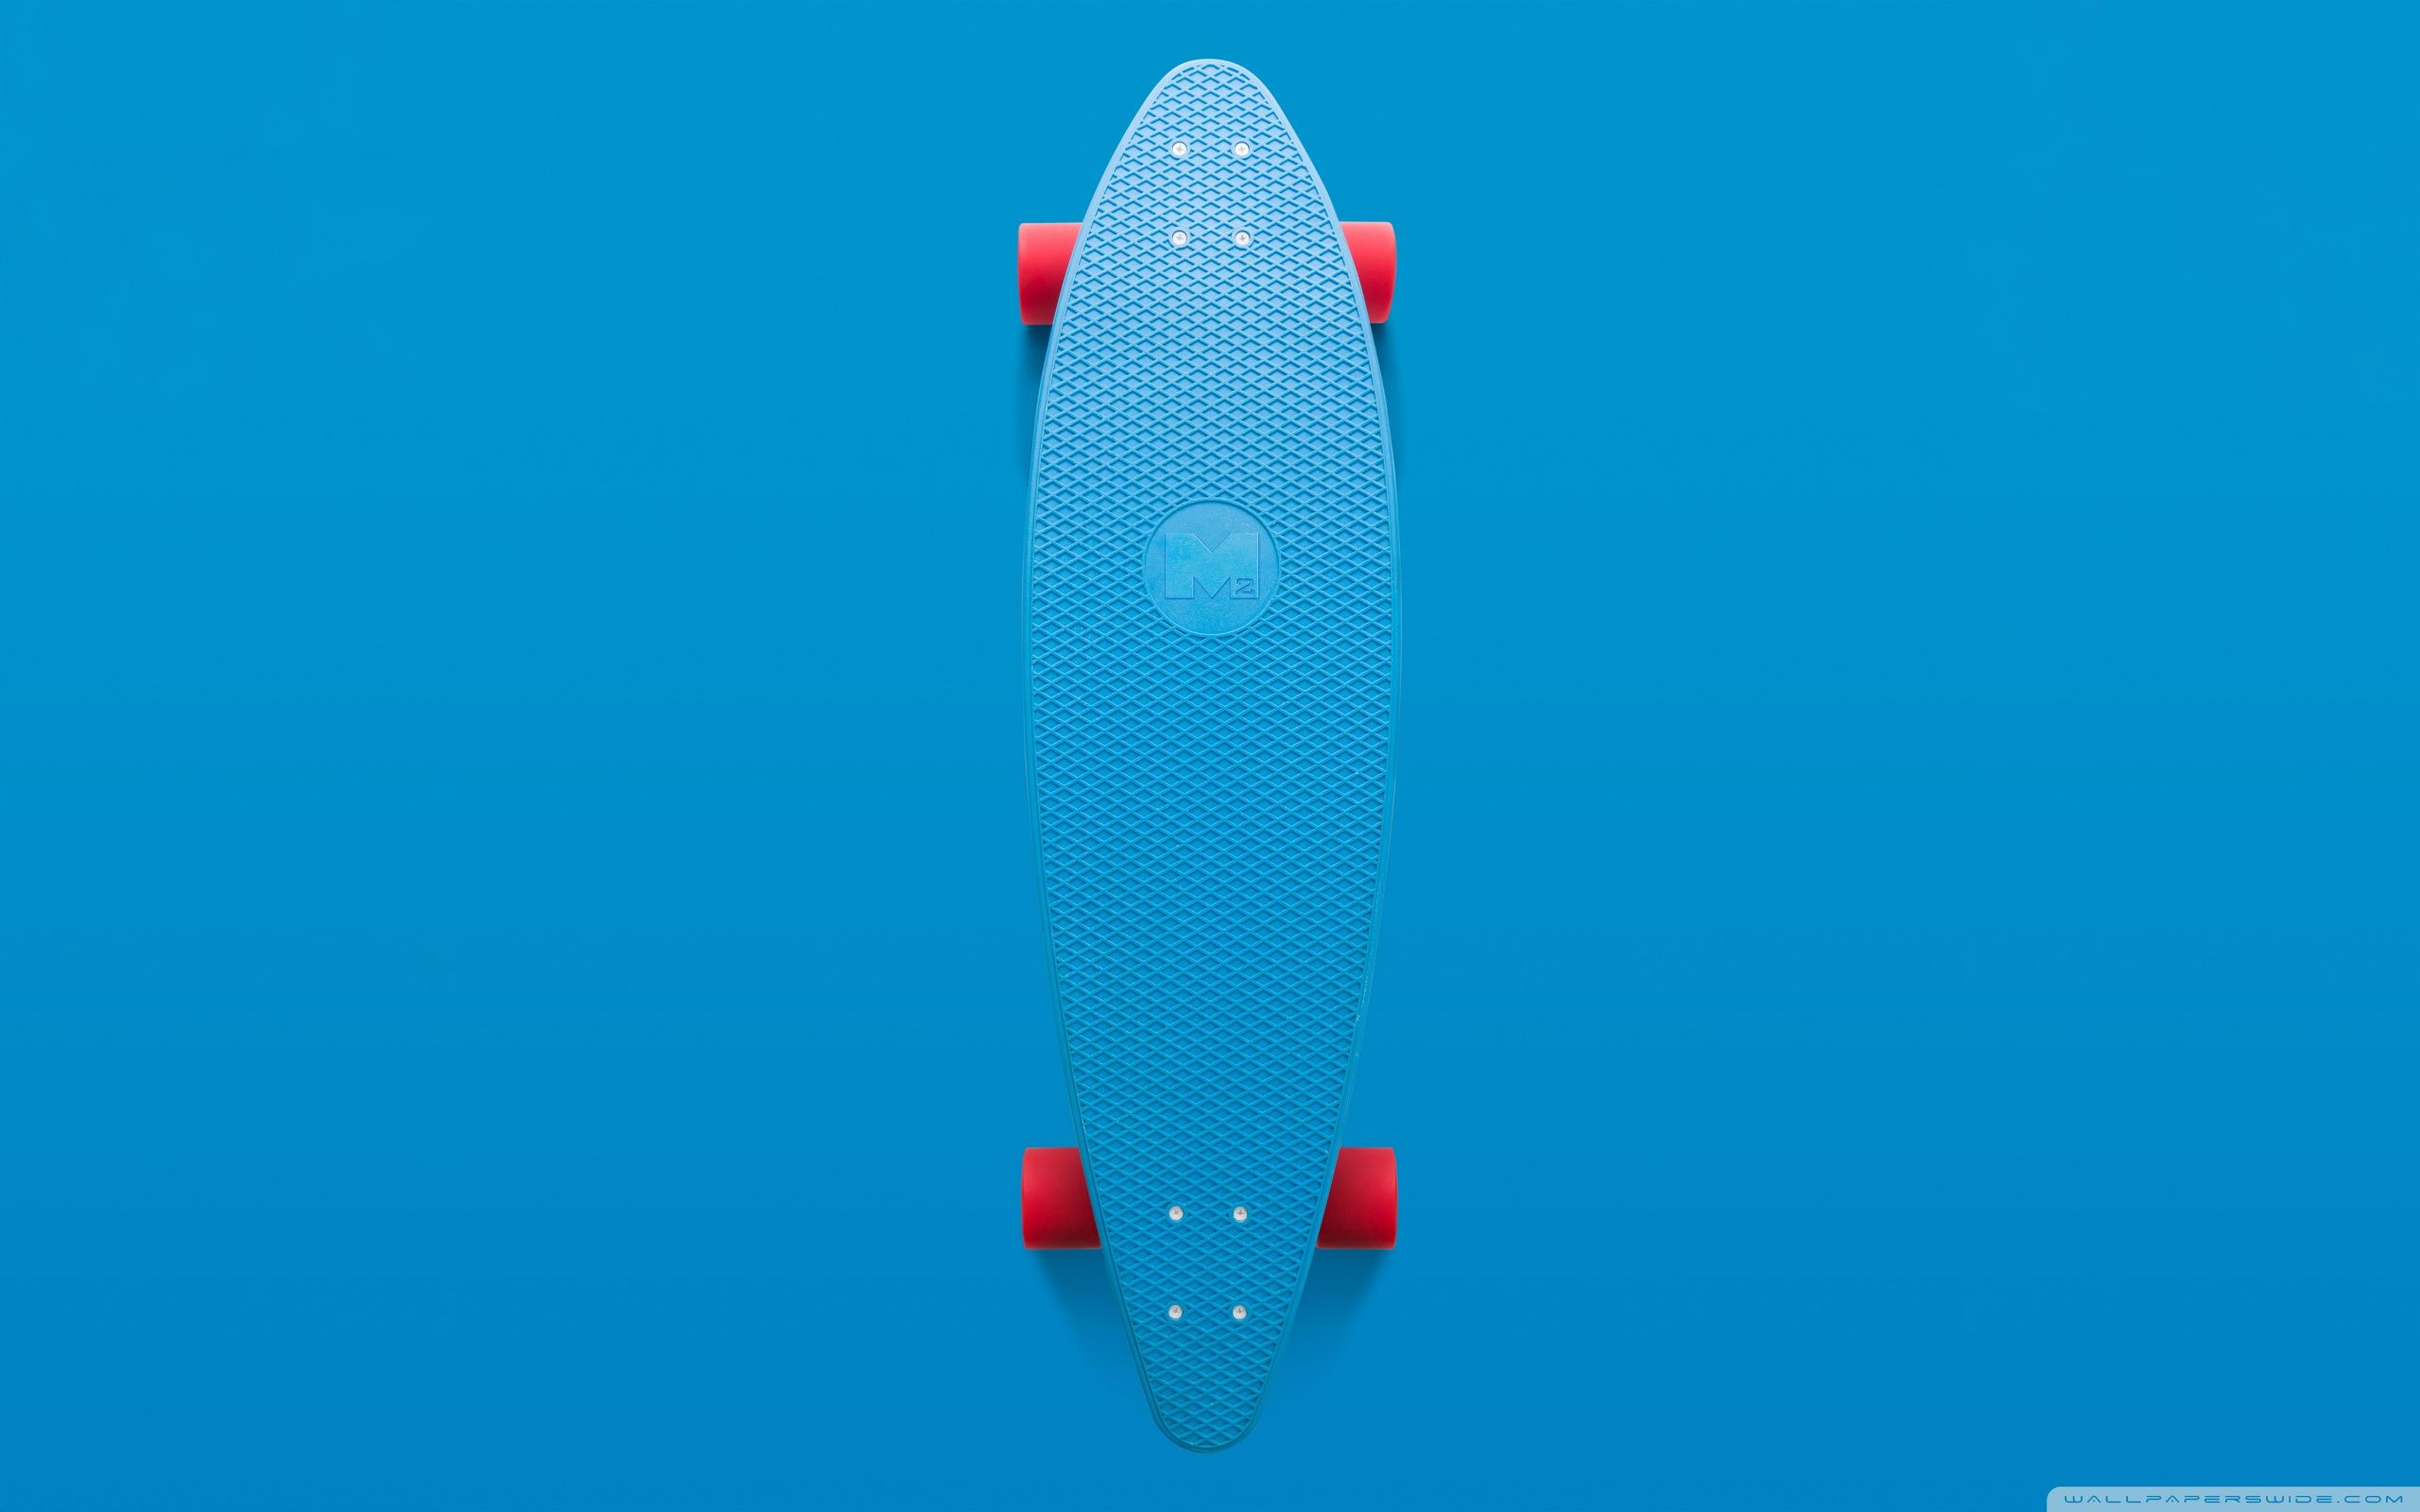 Skateboard Aesthetic Ultra HD Desktop Background Wallpaper for 4K UHD TV : Widescreen & UltraWide Desktop & Laptop : Tablet